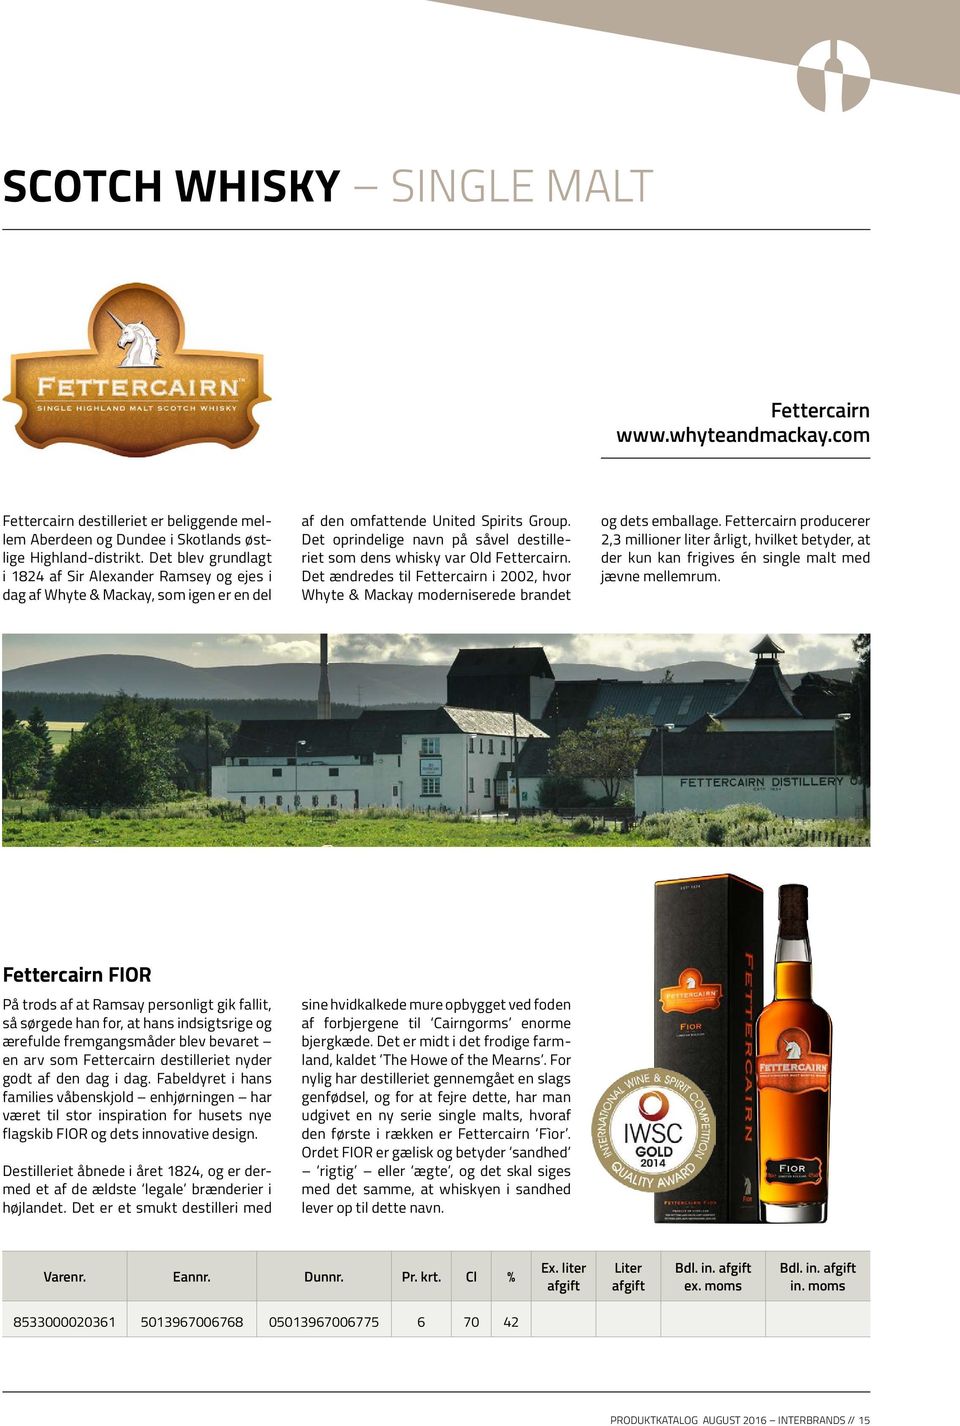 Det oprindelige navn på såvel destilleriet som dens whisky var Old Fettercairn. Det ændredes til Fettercairn i 2002, hvor Whyte & Mackay moderniserede brandet og dets emballage.